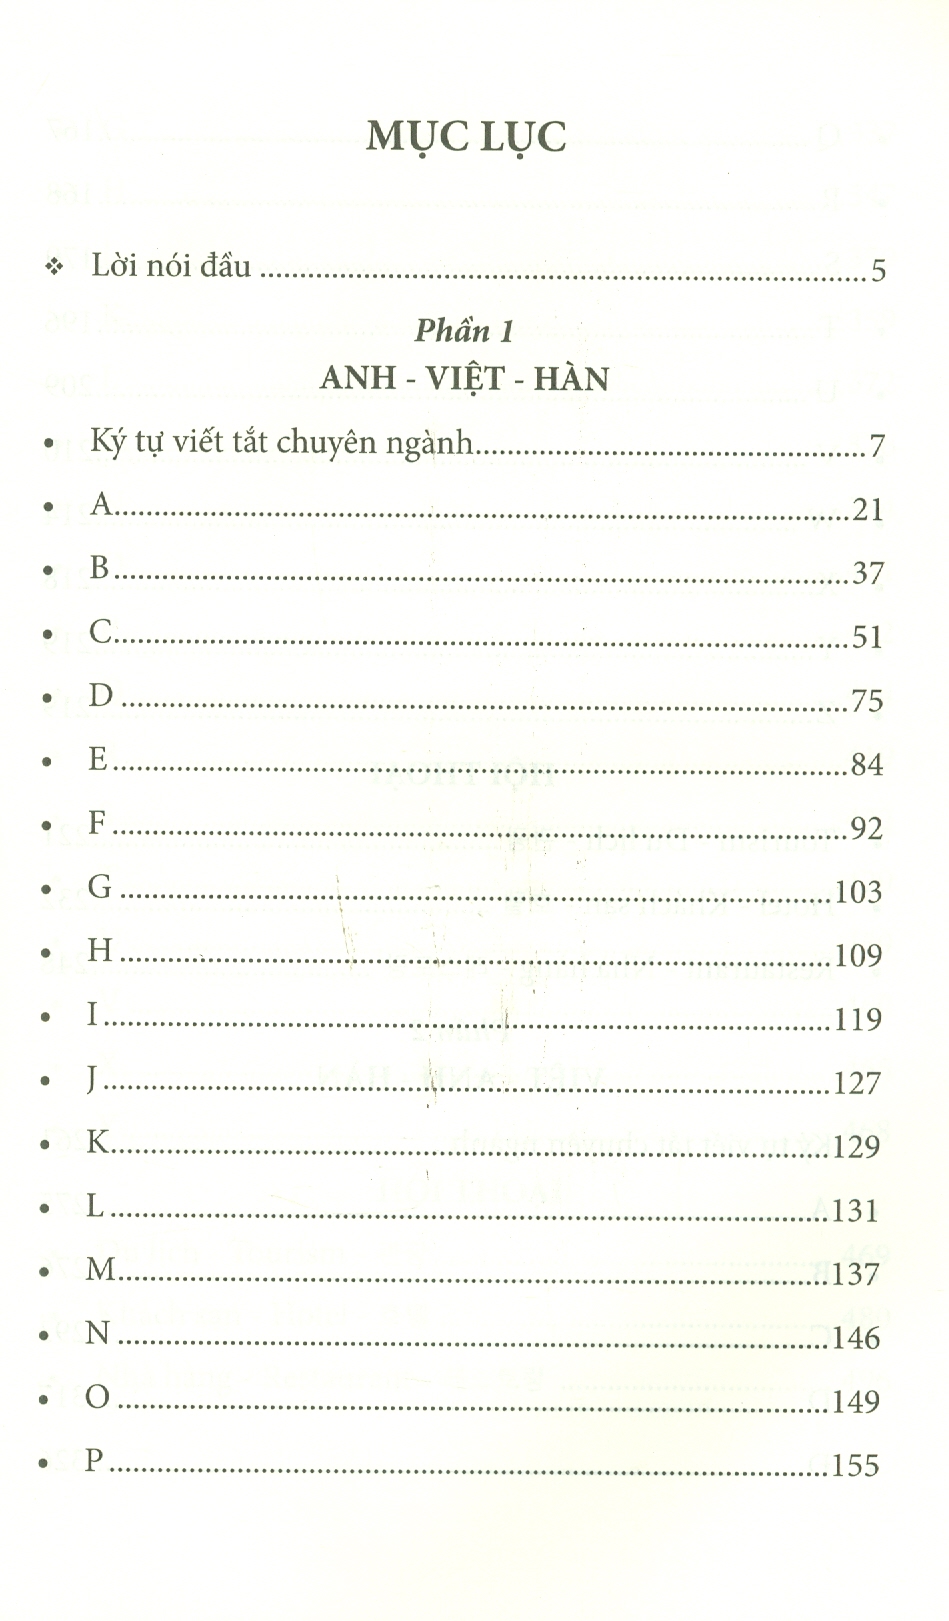 6000 Từ Vựng Chuyên Ngành Du Lịch - Khách Sạn - Nhà Hàng (Anh - Việt - Hàn)